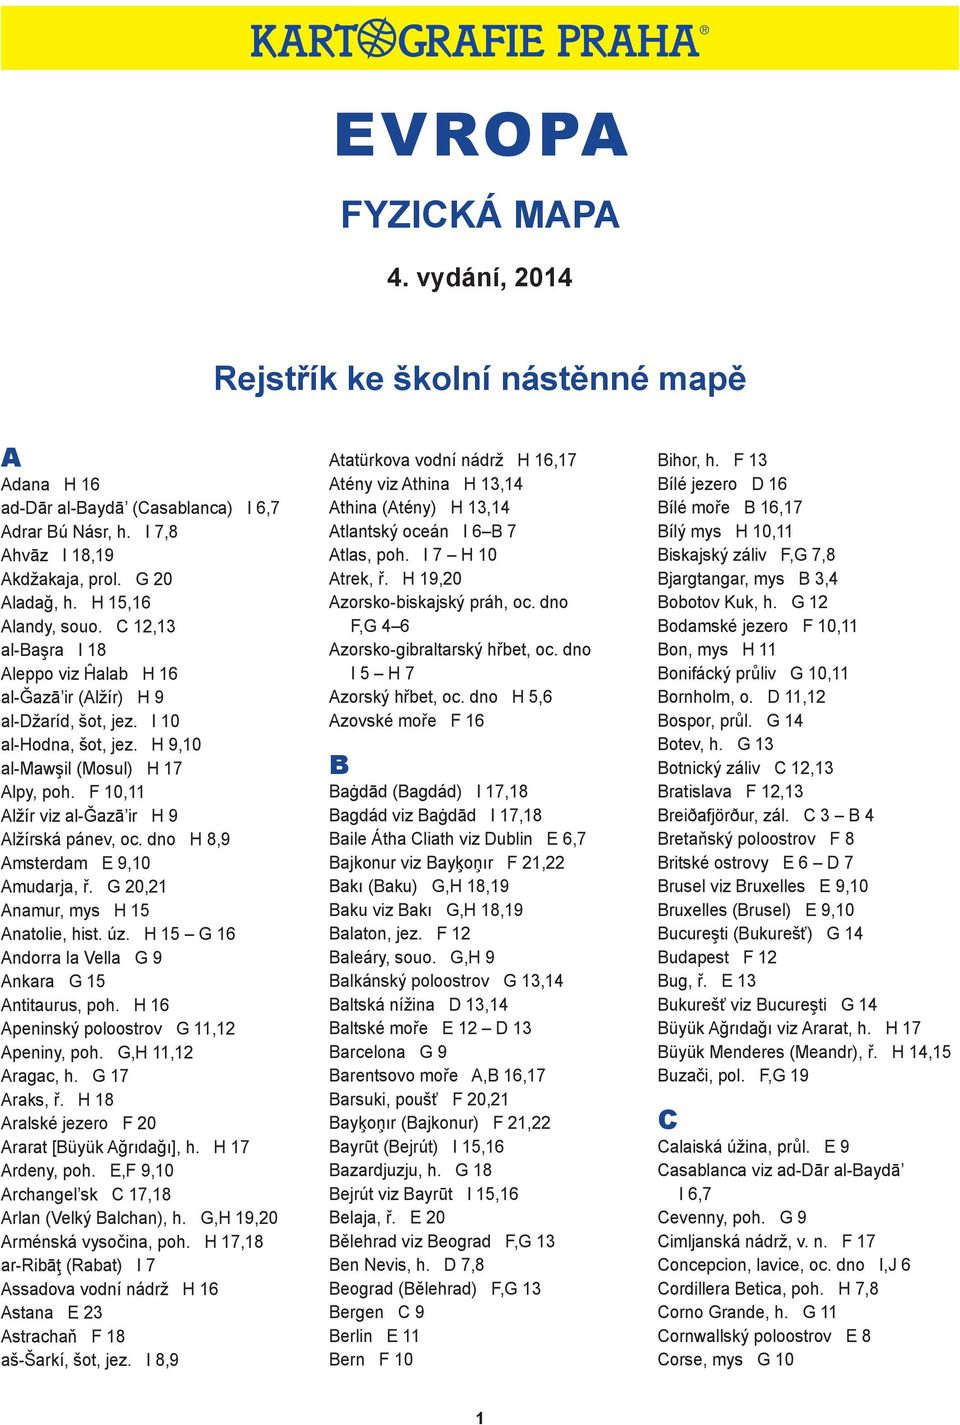 EVROPA FYZICKÁ MAPA. 4. vydání, Rejstřík ke školní nástěnné mapě - PDF  Stažení zdarma